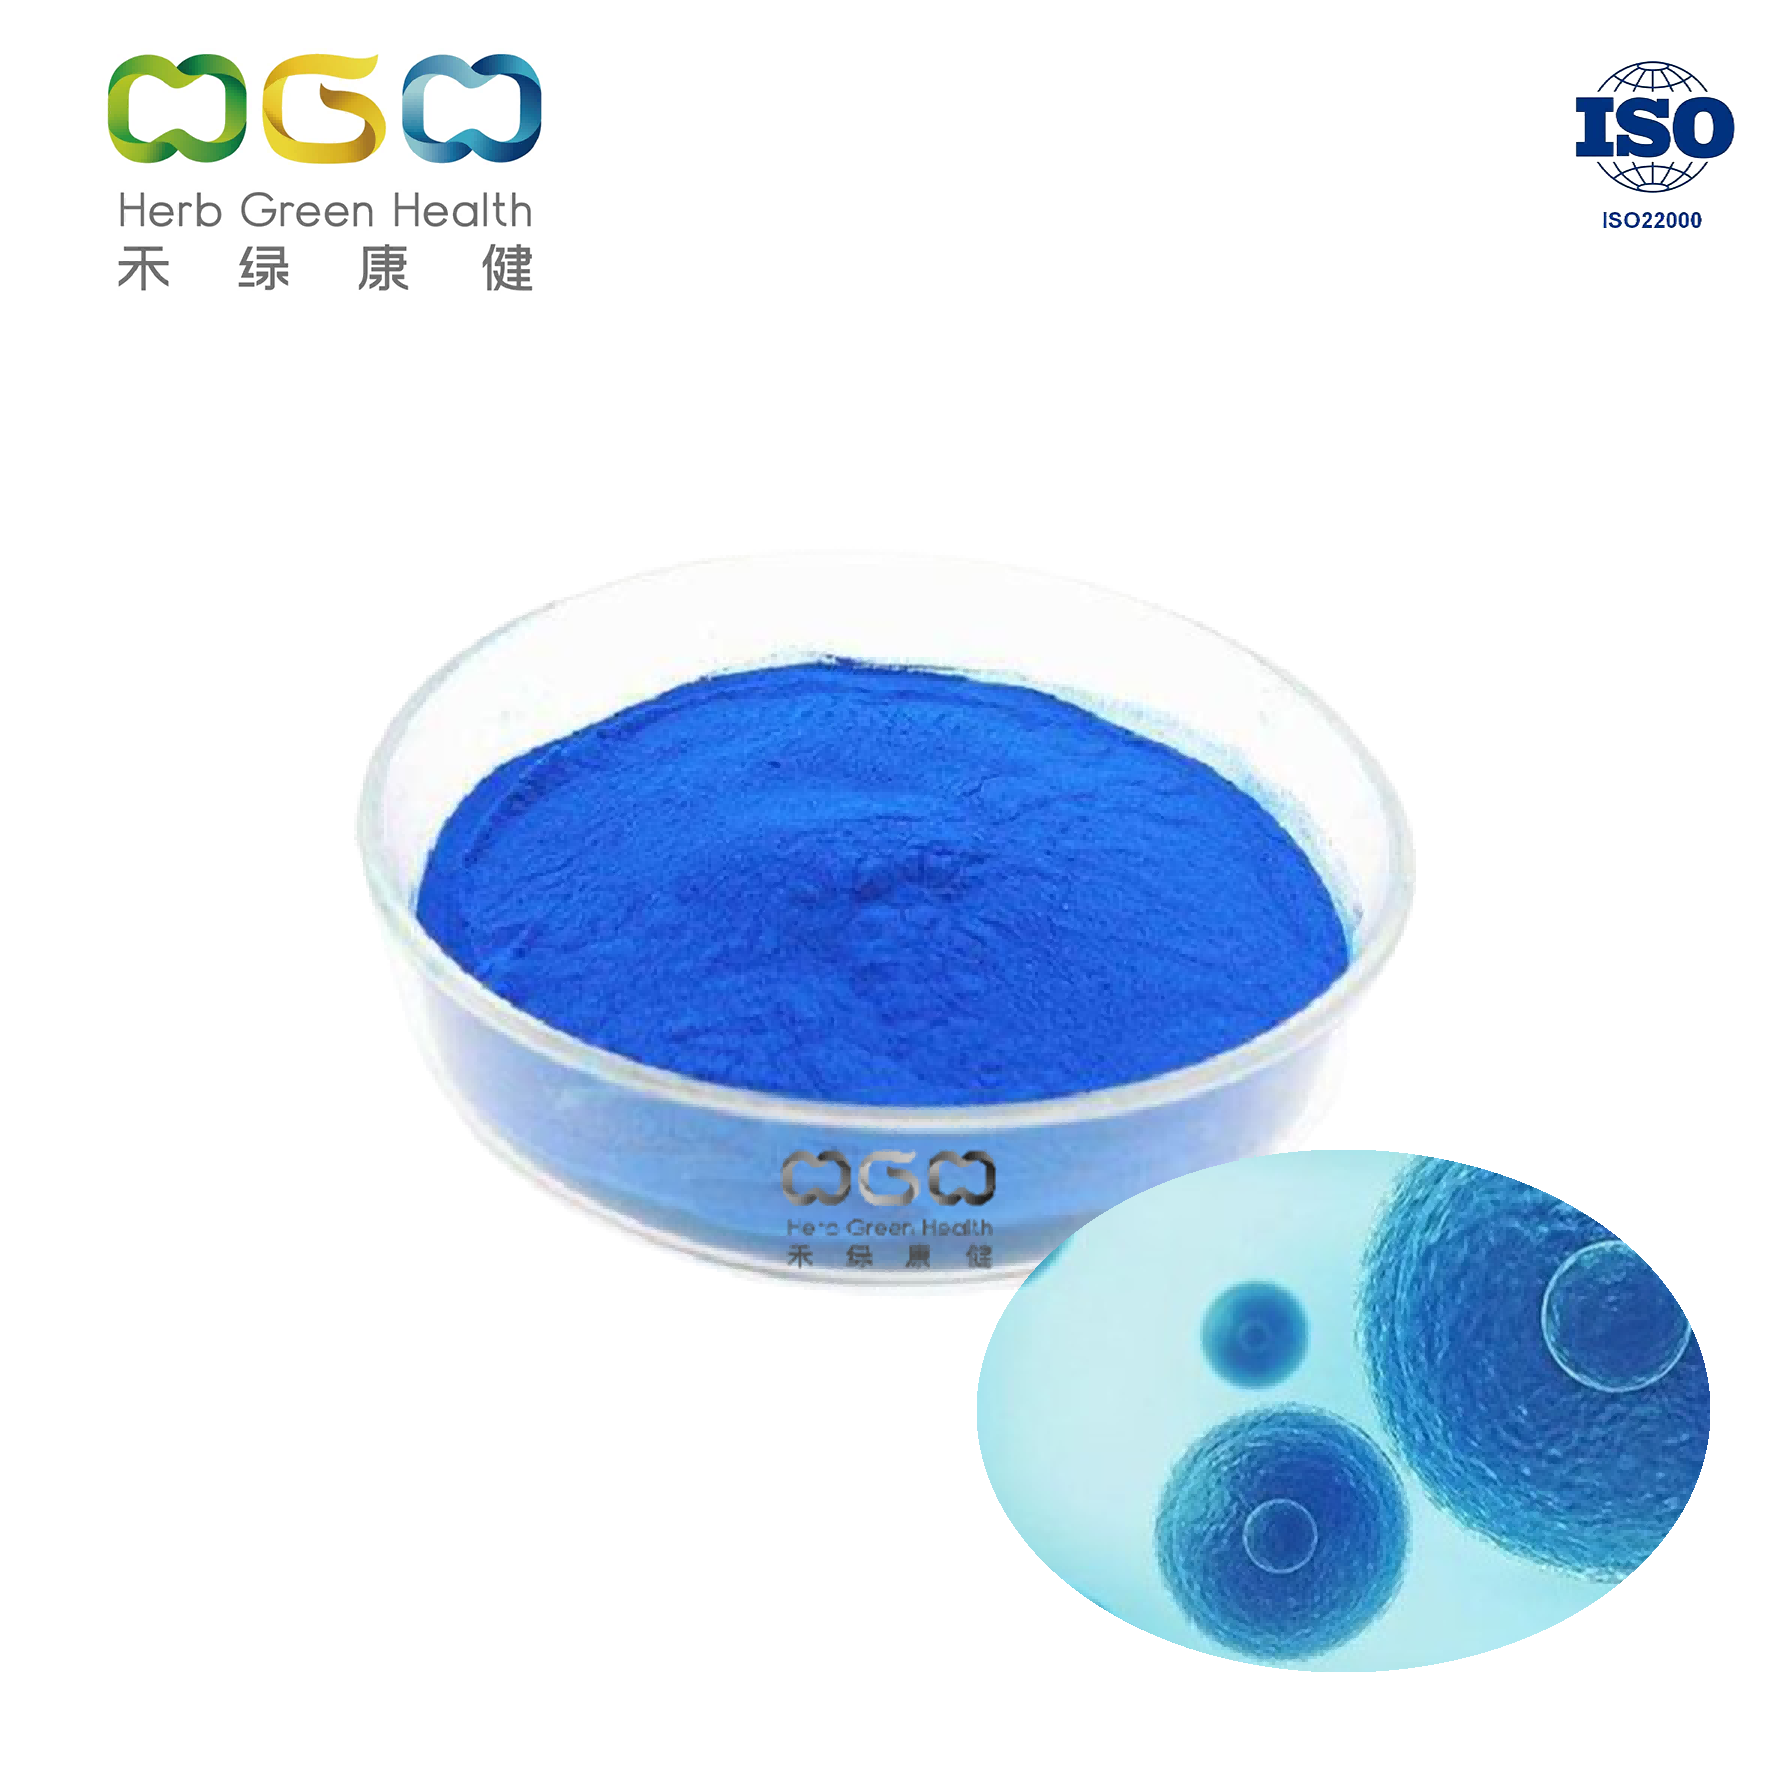 Ficocianina natural (extracto de espirulina azul) Valor de color ±E18.0 (1% 618nm)